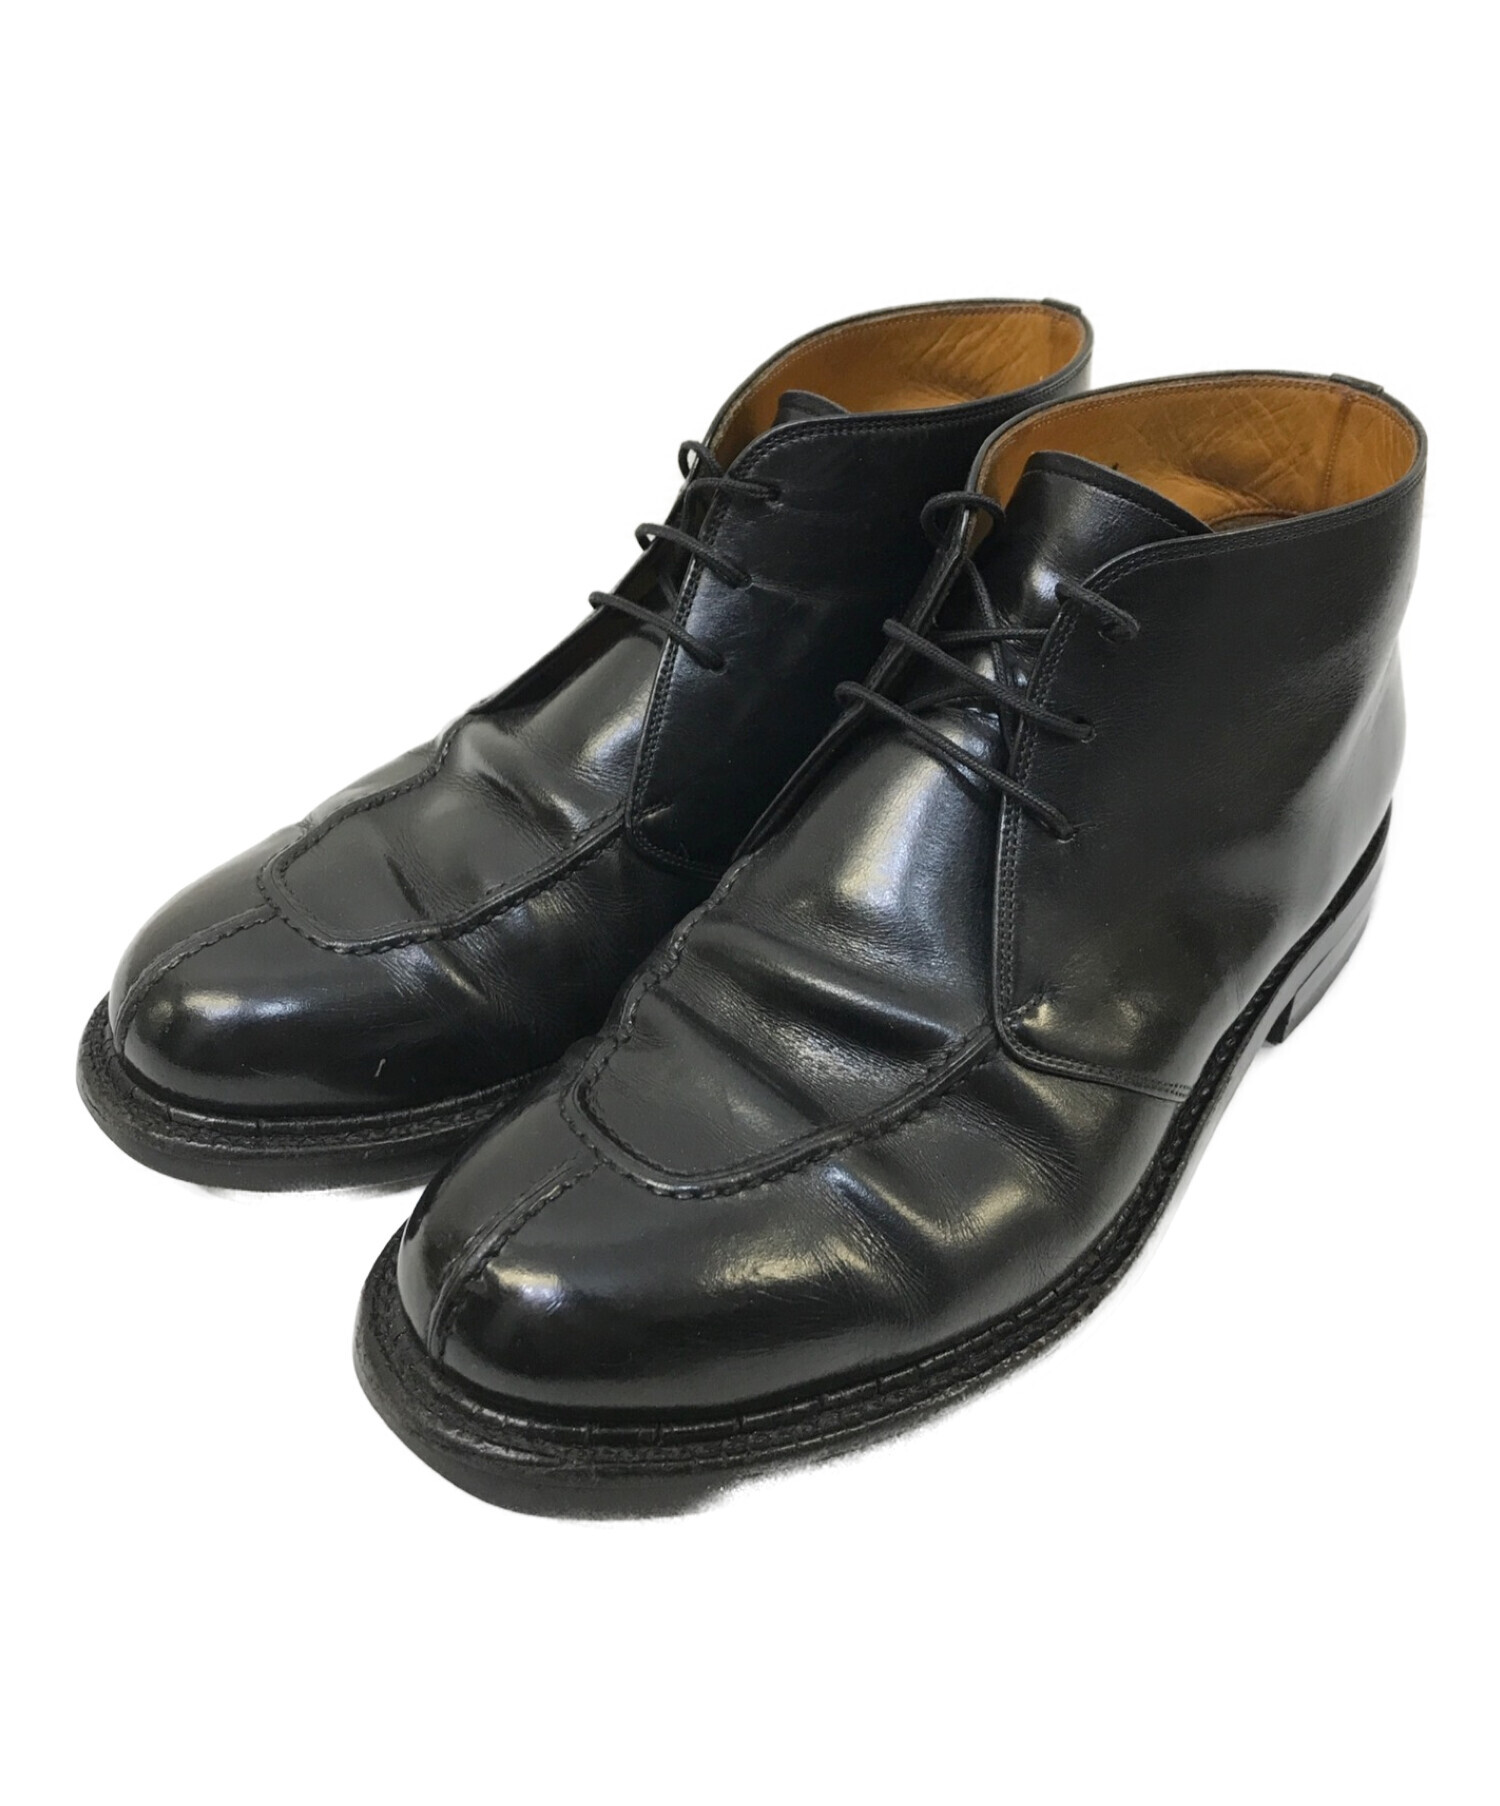 SCOTCH GRAIN (スコッチグレイン) チャッカーブーツ ブラック サイズ:24